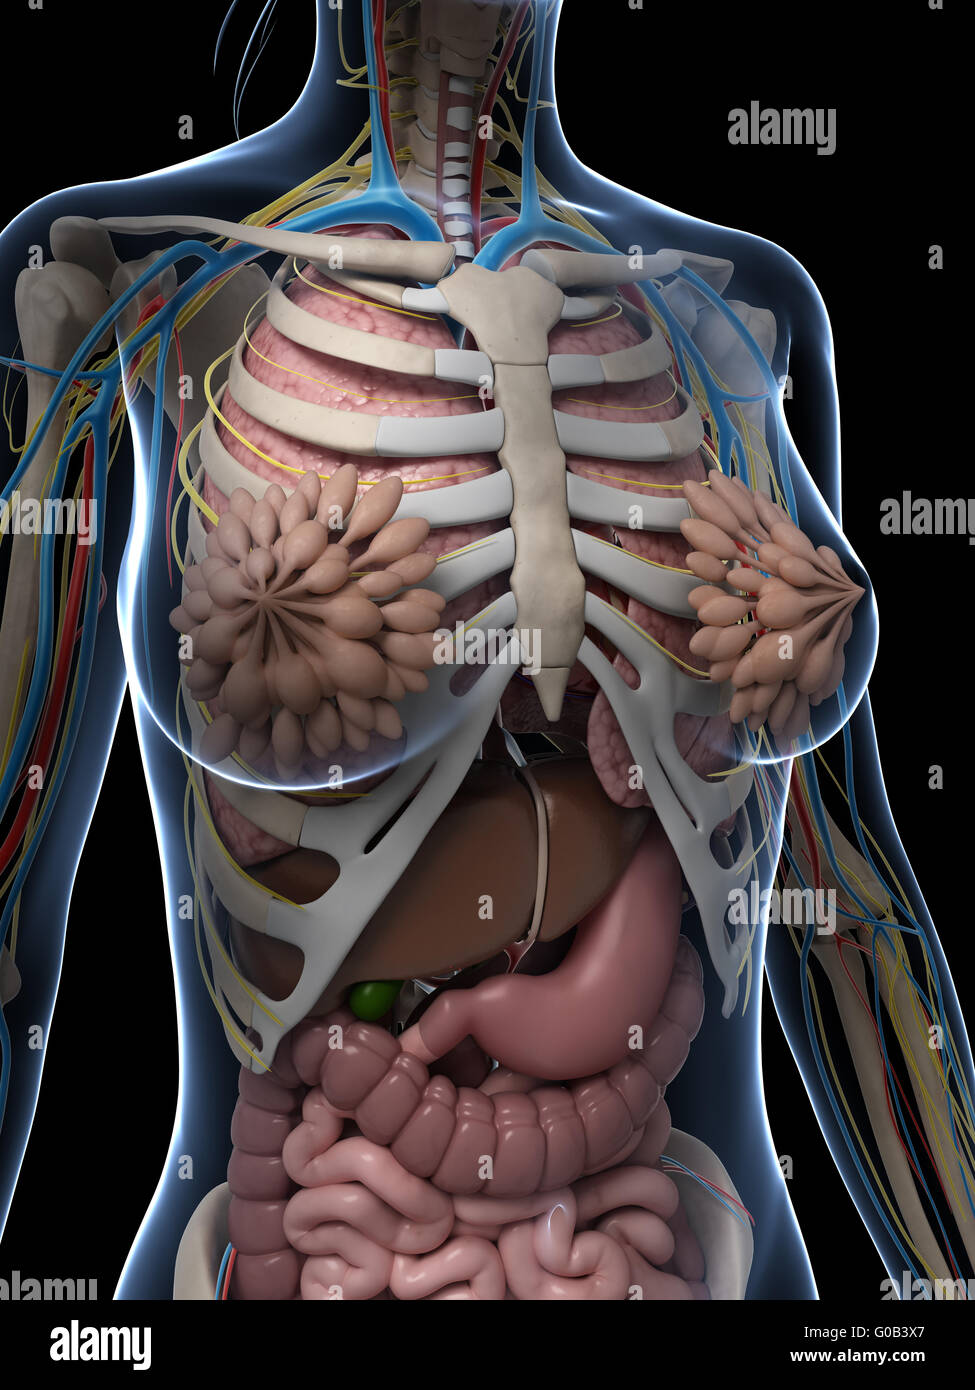 Организм на фотографии является. Человеческий организм в разрезе. Внутренние женские органы анатомия.